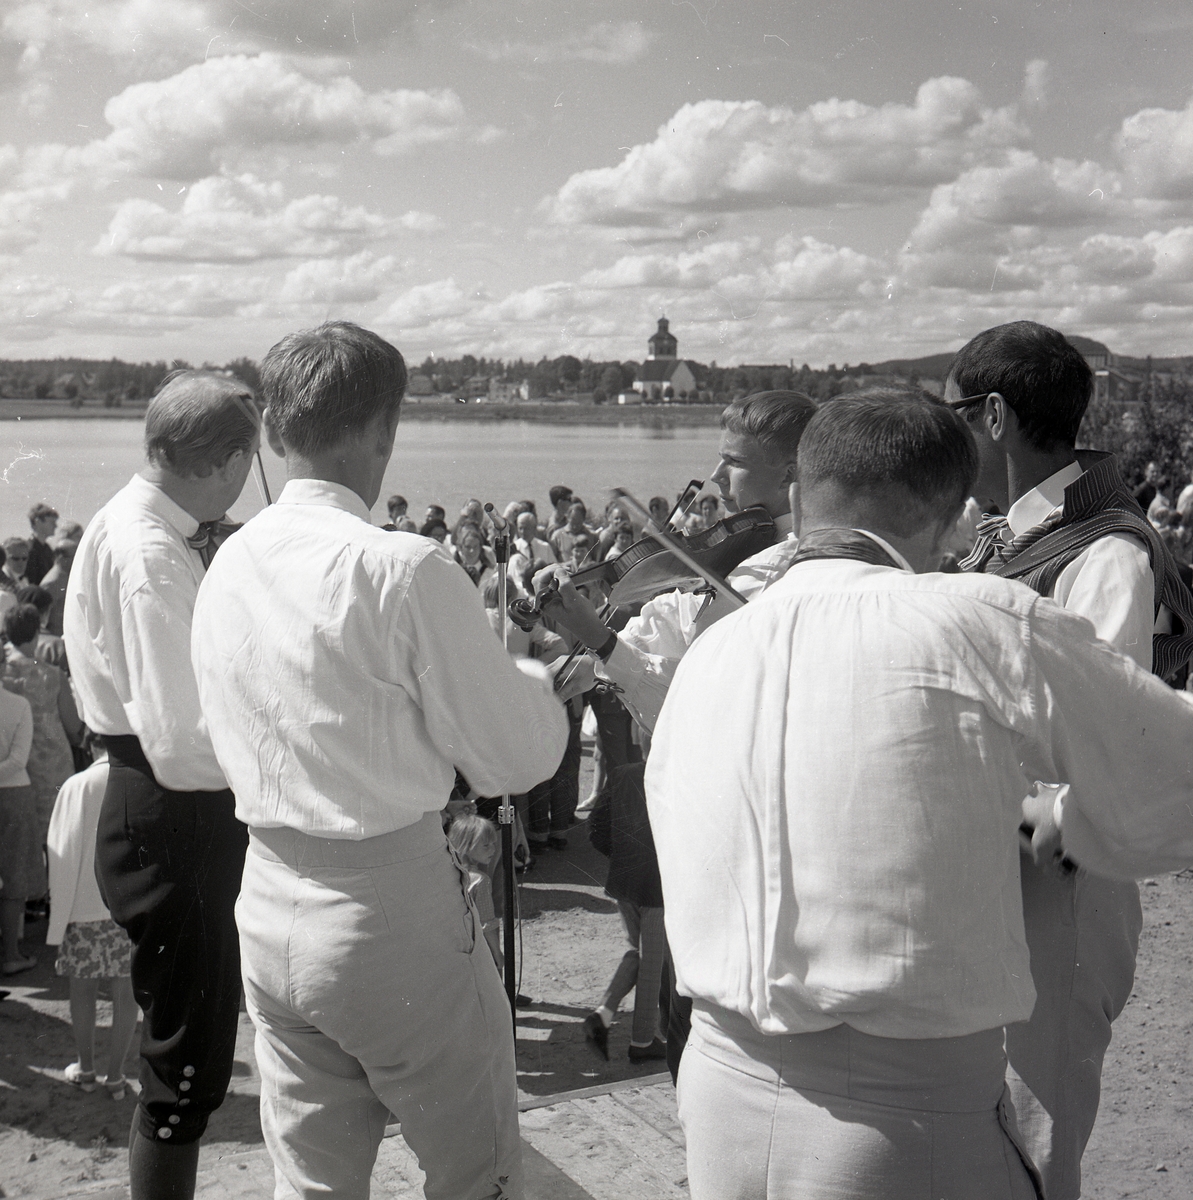 Spelmän och publik vid Vågens strand i Bollnäs under Hårgadansen, 13 juli 1968. I bakgrunden syns Bollnäs kyrka.